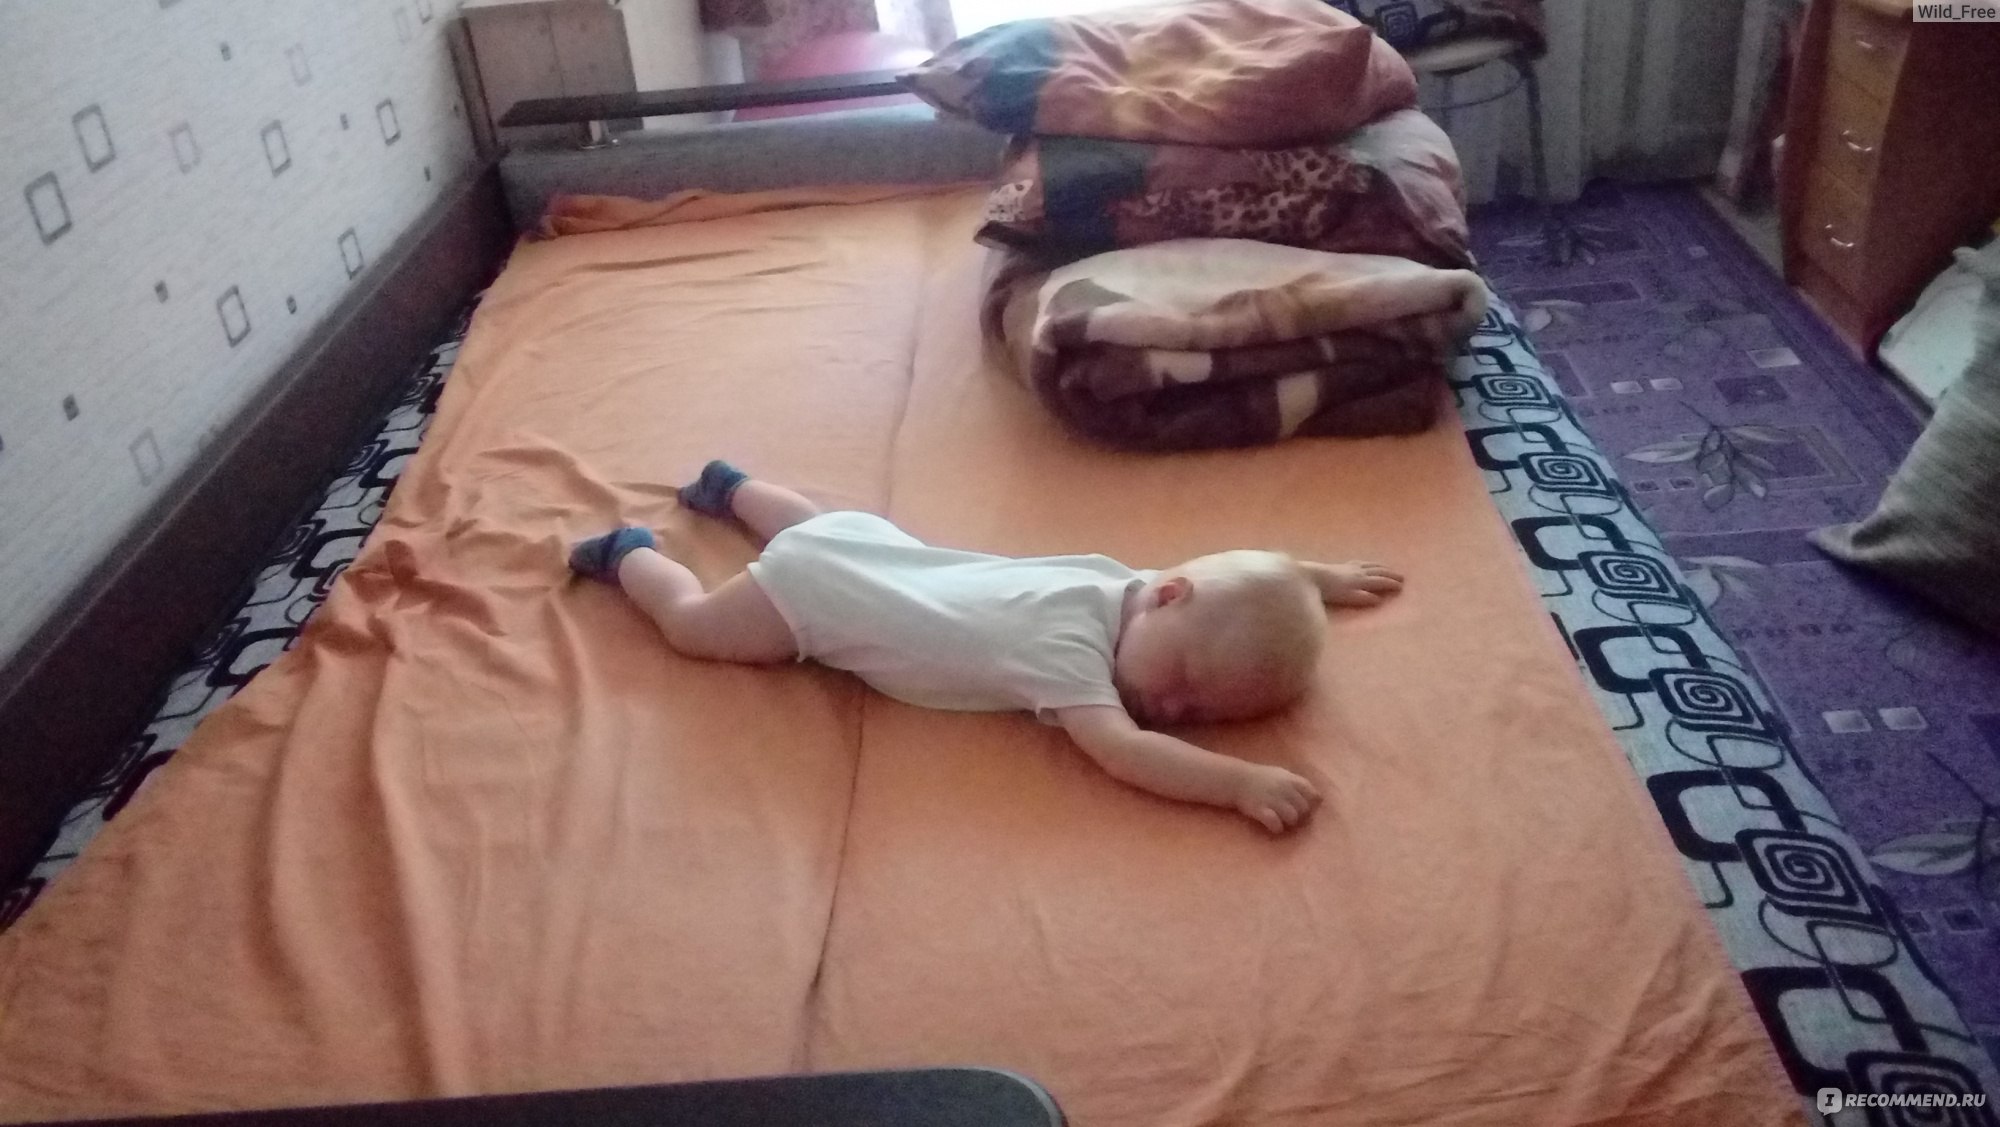 Ребенок 4 года упал с кровати во сне